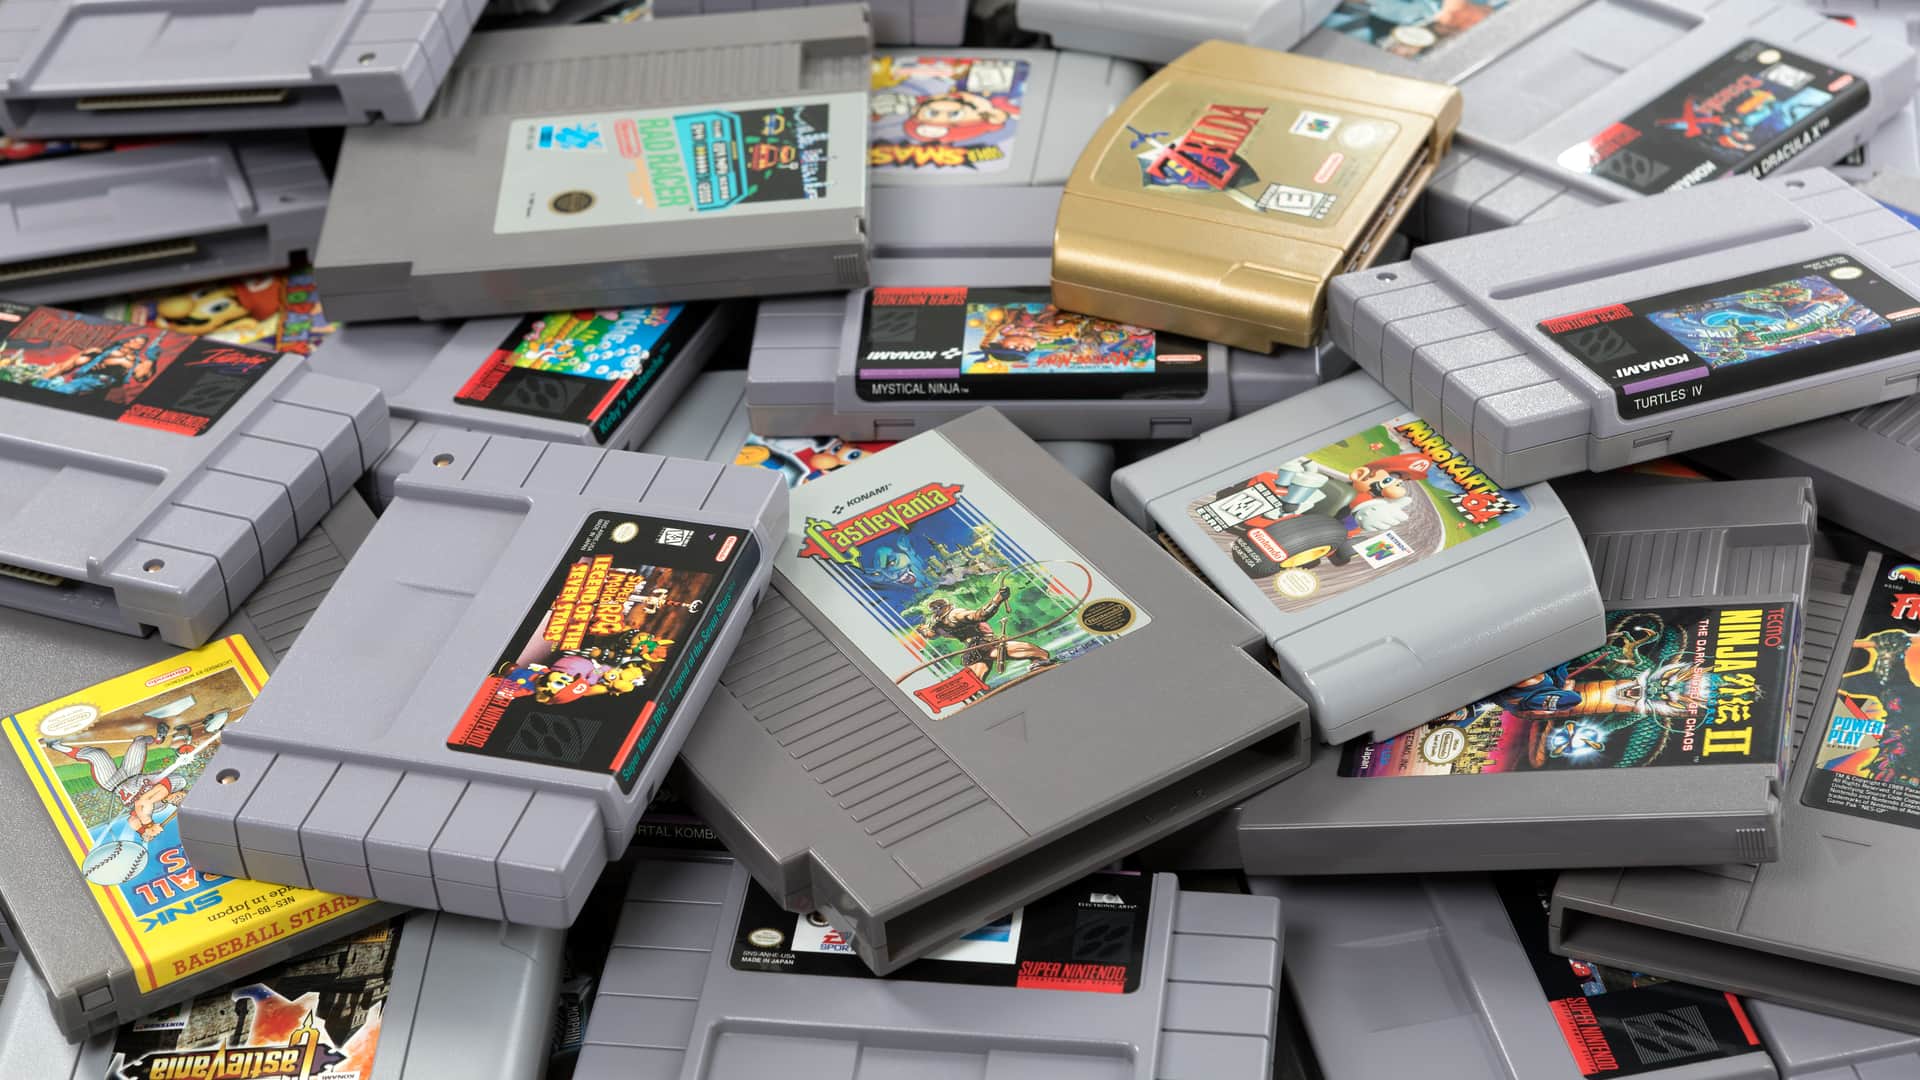 Pila de cartuchos de Nintendo entre los que destaca el cartucho dorado de The Legend of Zelda Ocarina of Time uno de los mejores videojuegos de la historia